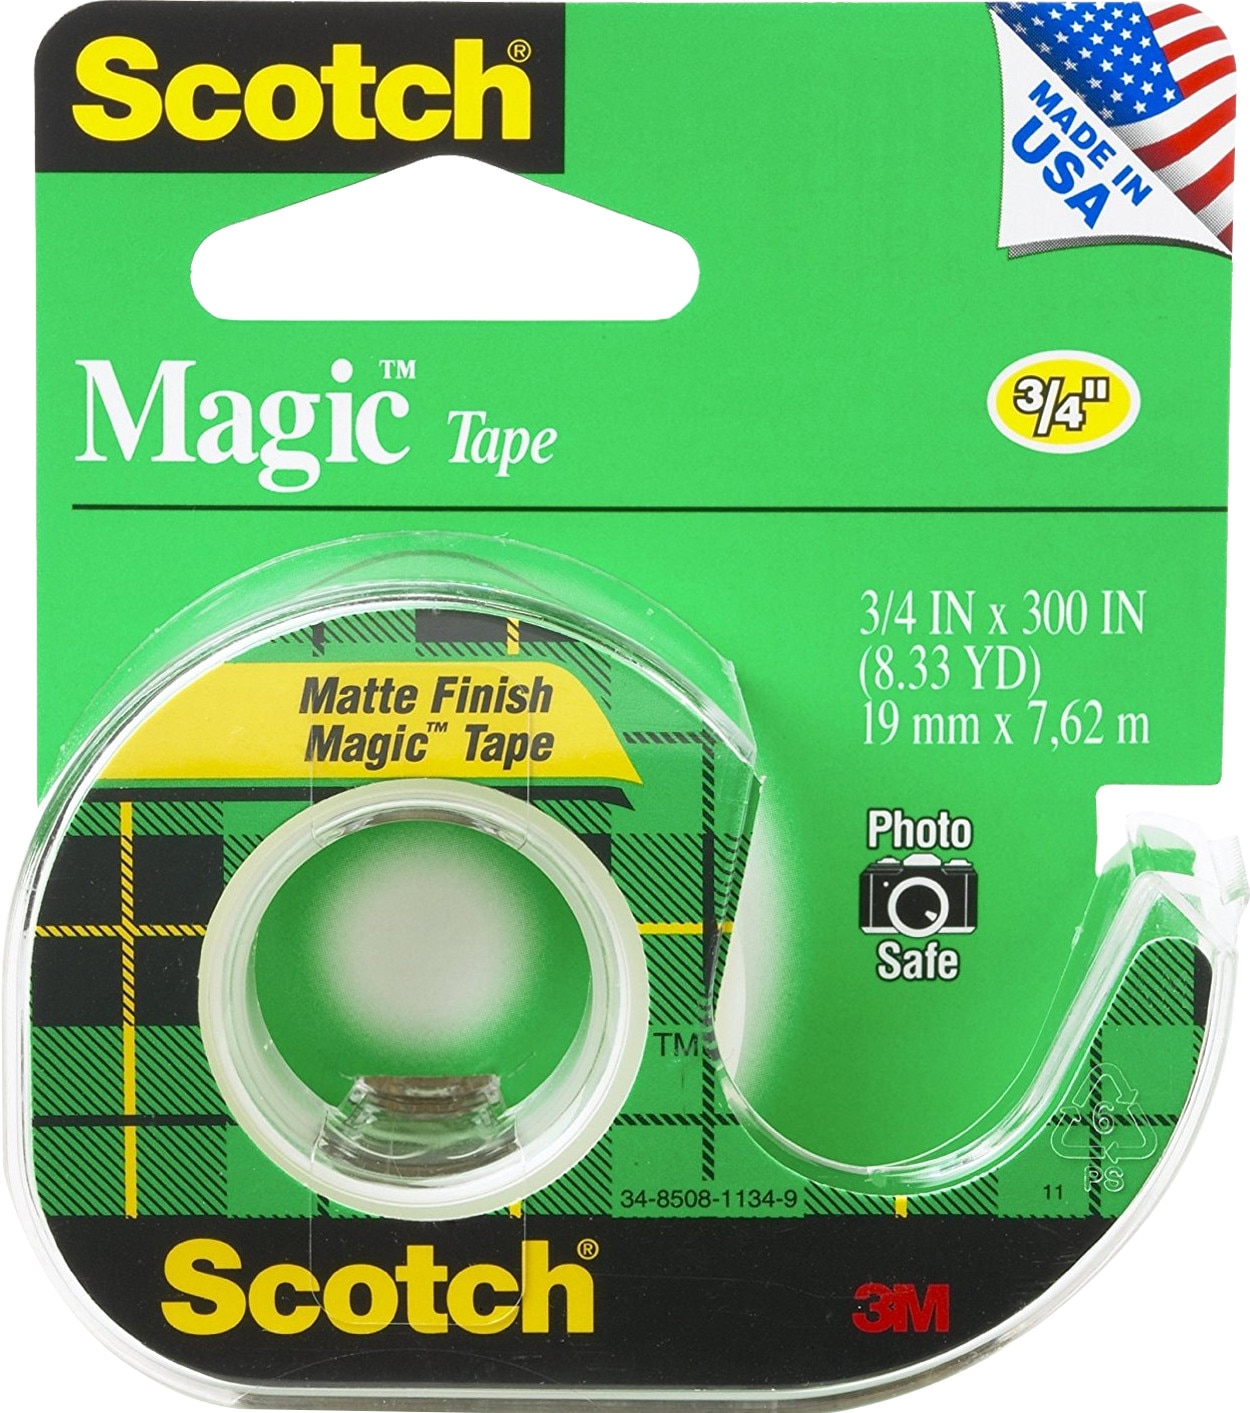 3M Scotch Magic Tape Dispensered Roll 34 x 300